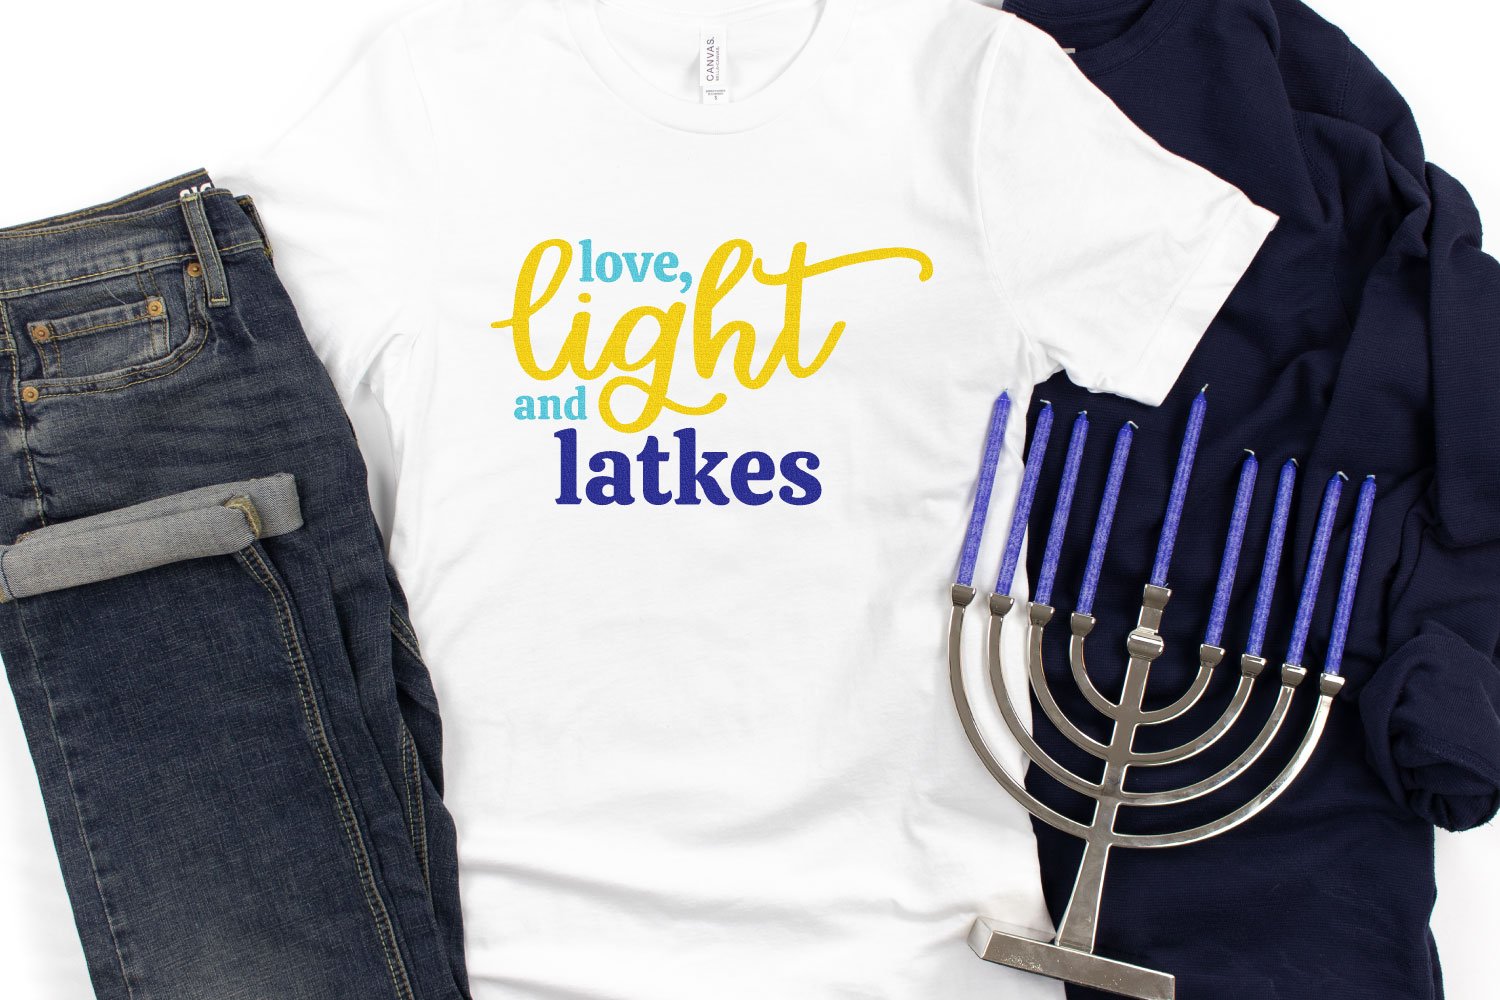 Love, Light and Latkes on white t-shirt